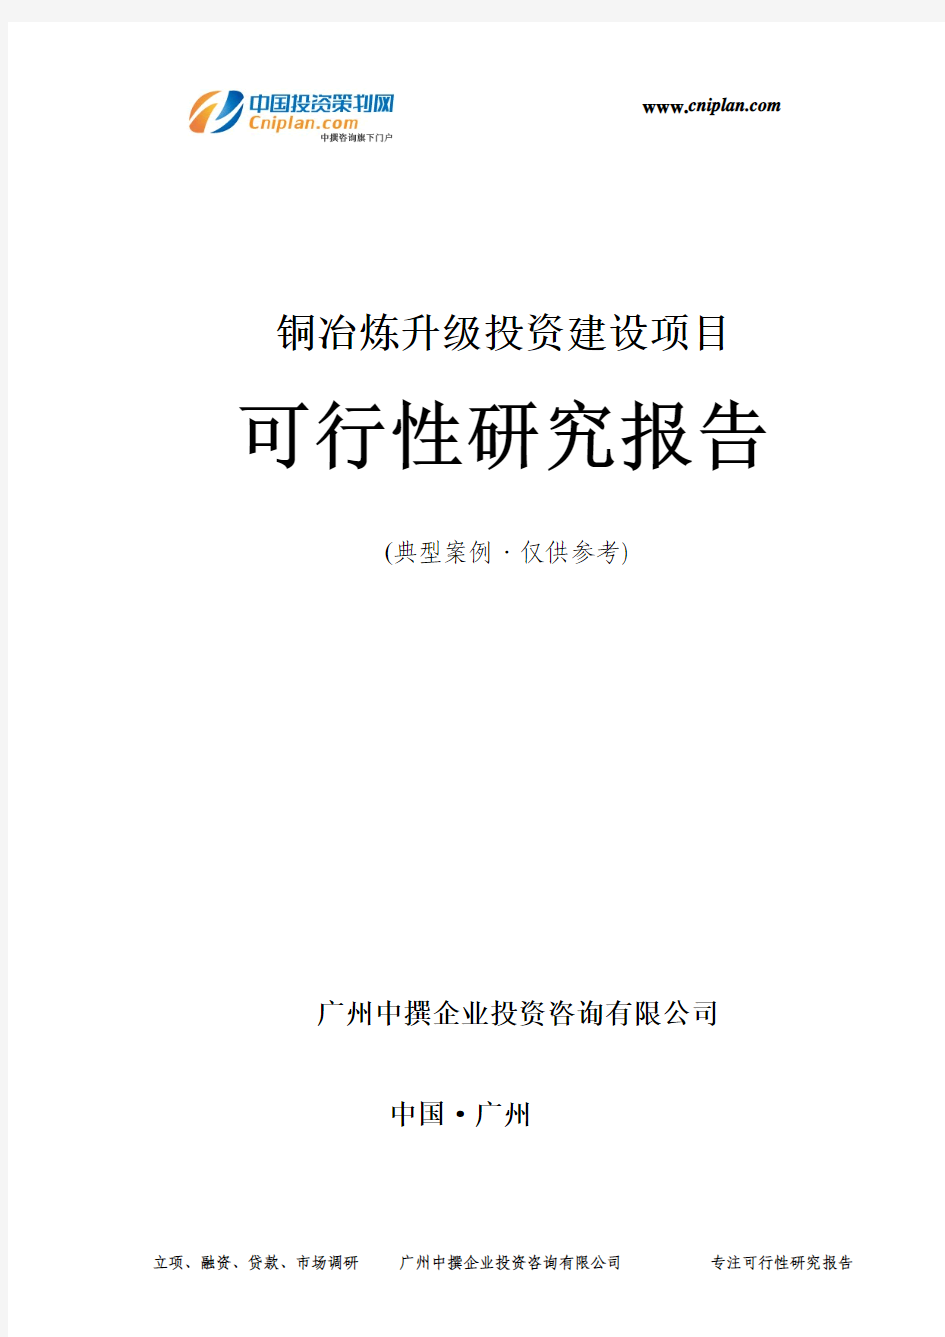 铜冶炼升级投资建设项目可行性研究报告-广州中撰咨询